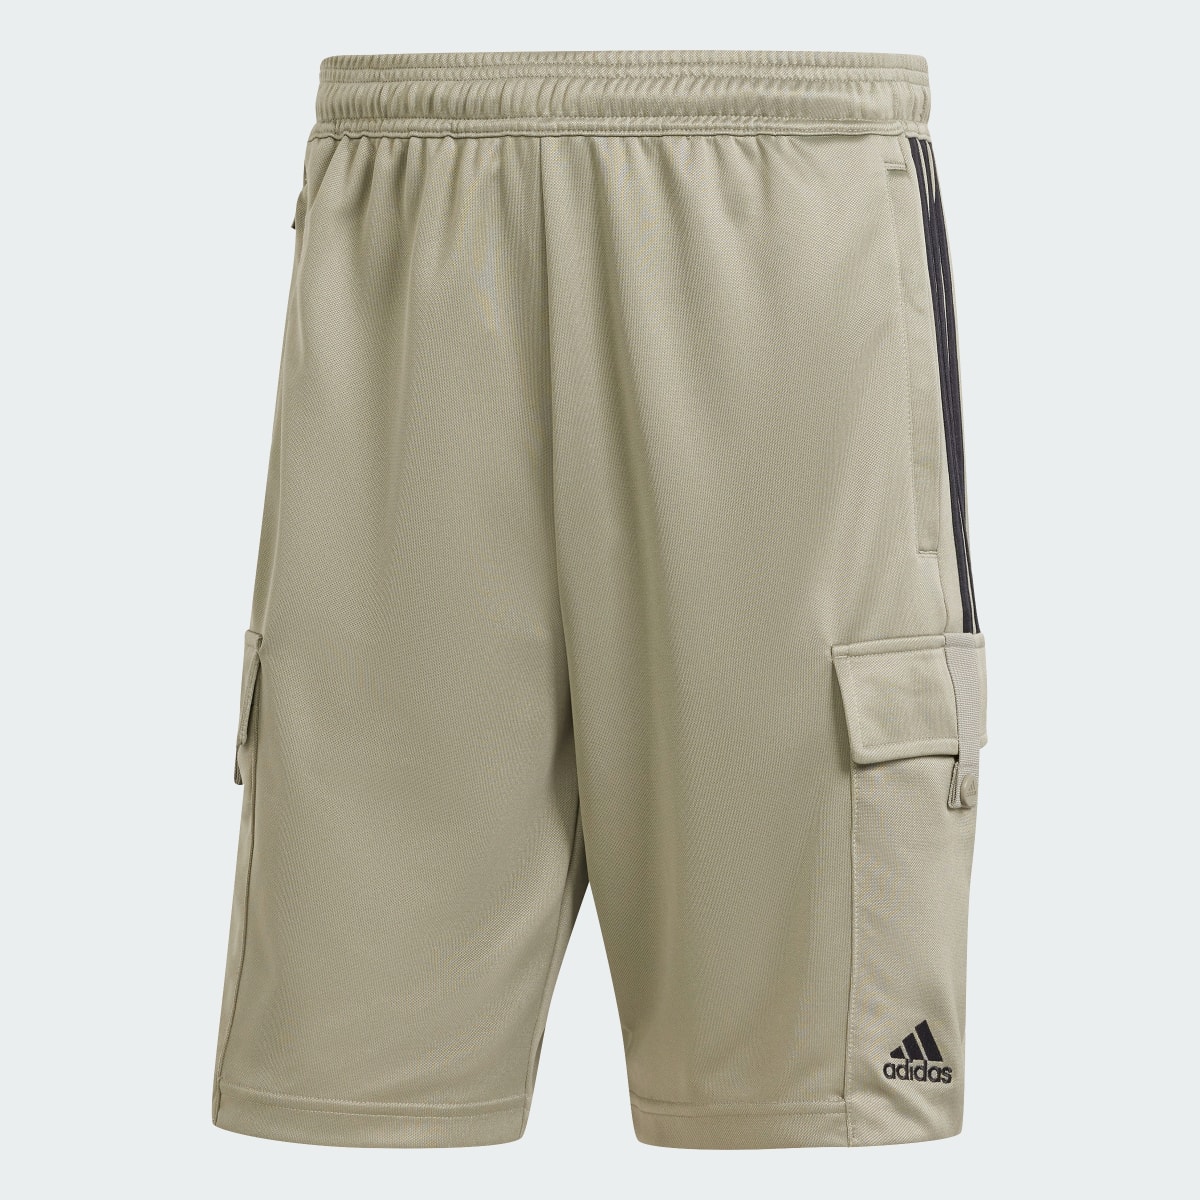 Adidas Tiro Cargo Shorts. 4